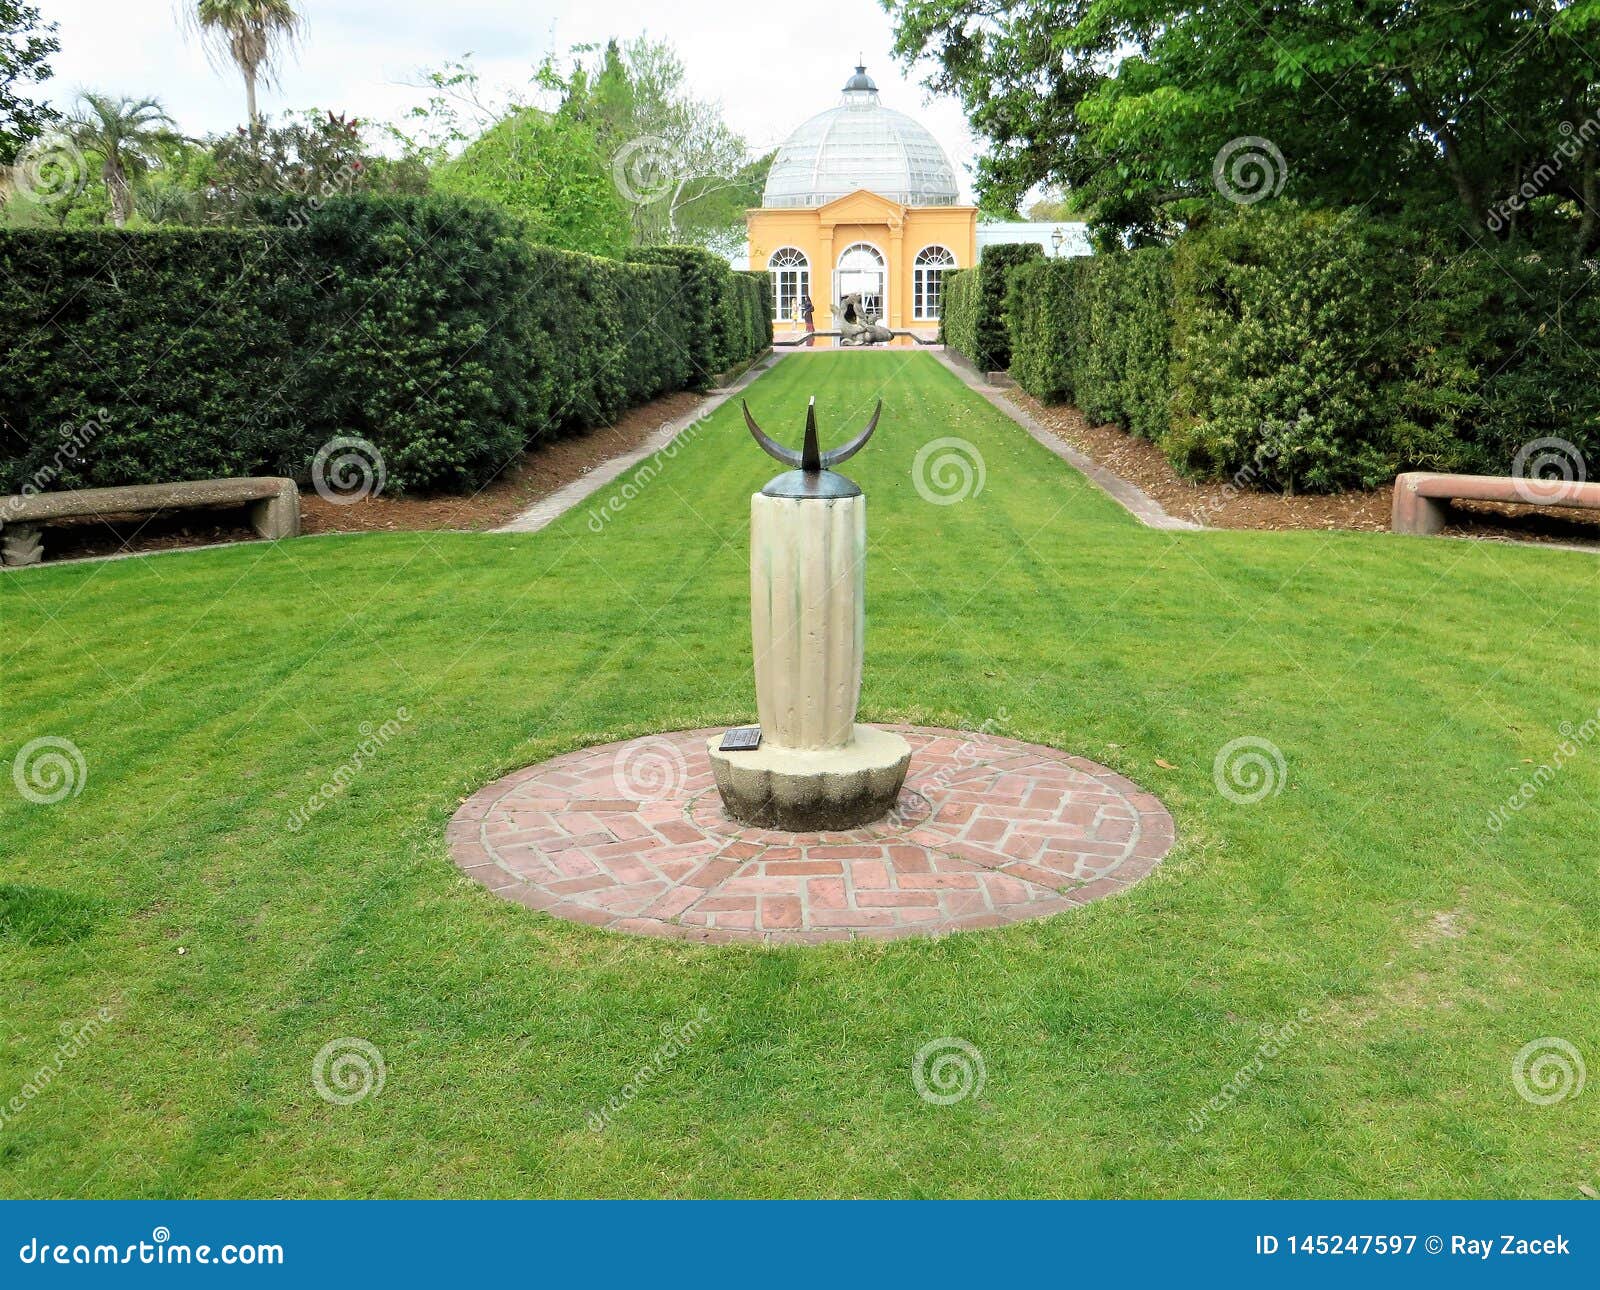 Sundial New Orleans Botanical Garden Stock Image Image Of Brass